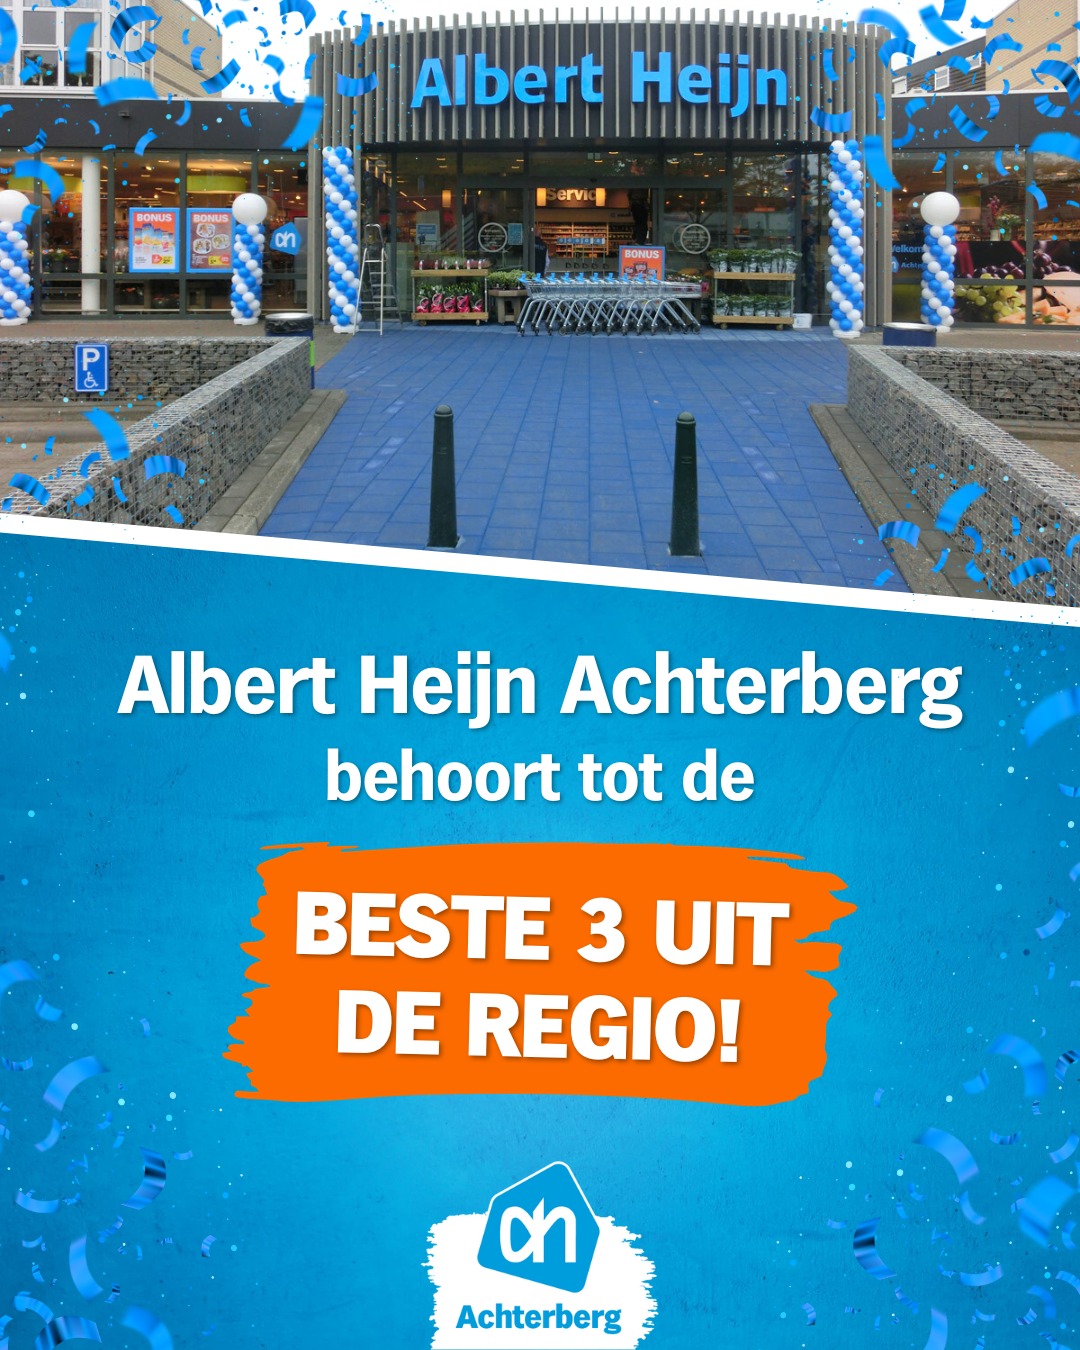 Albert Heijn Achterberg behoort tot de beste 3 uit de regio!